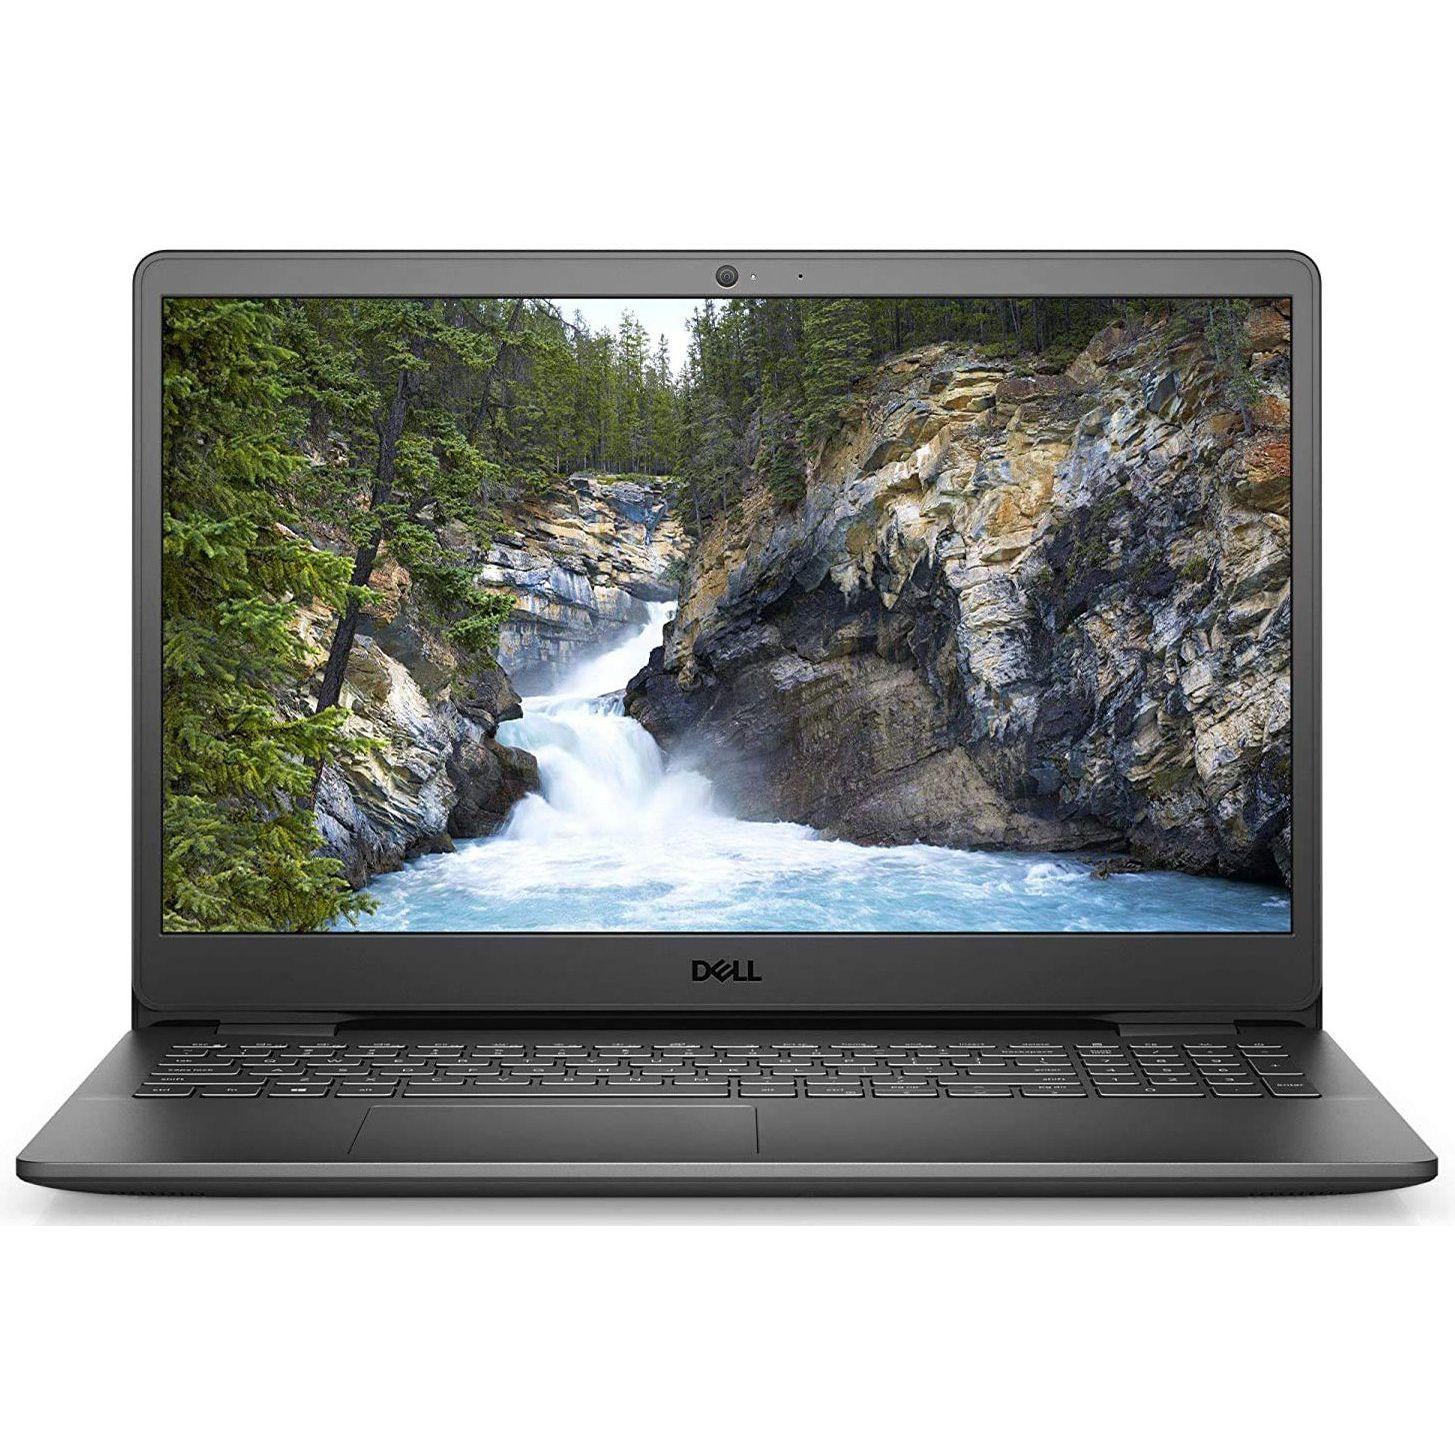 Core i3-1005G1/4GB/1TB HDD 15.6-inch FHD Laptop OP ubntu